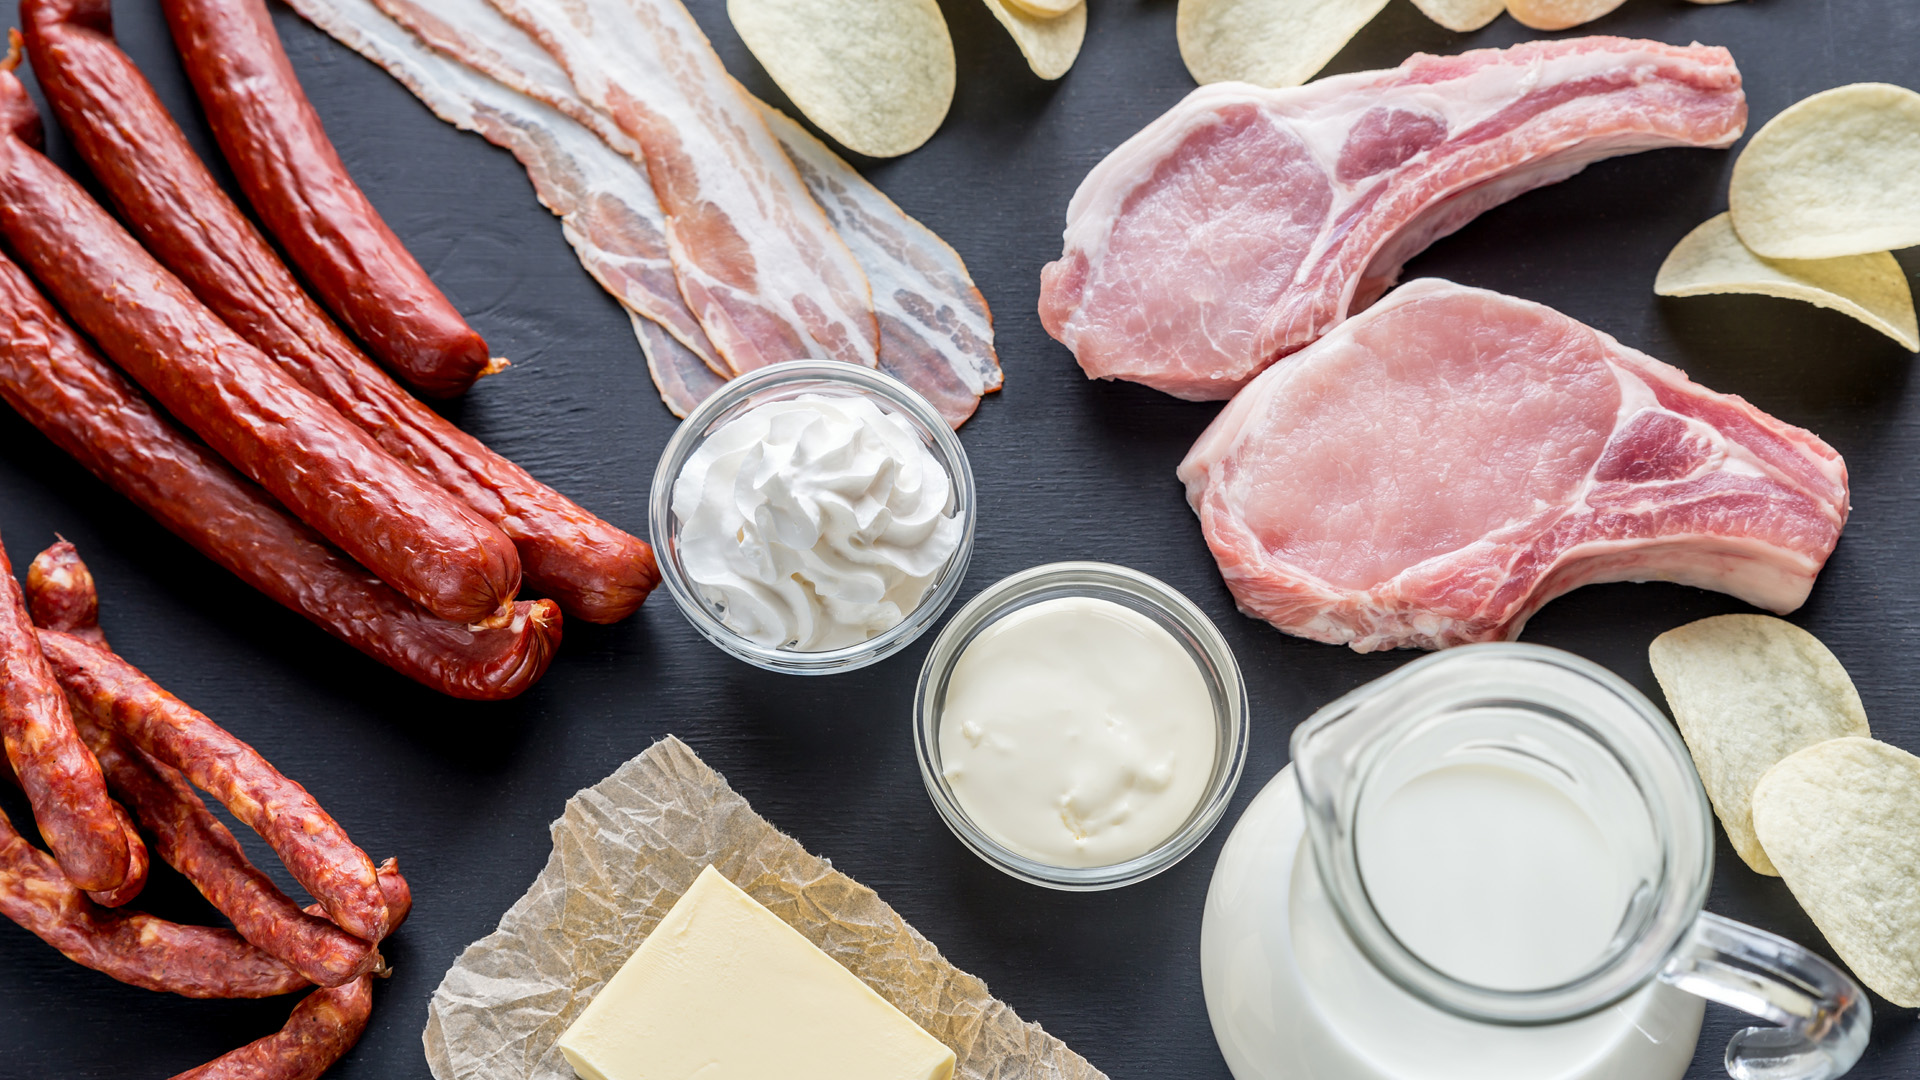 Los alimentos con grasas saturadas aumentan el riesgo cardíaco (Shutterstock)